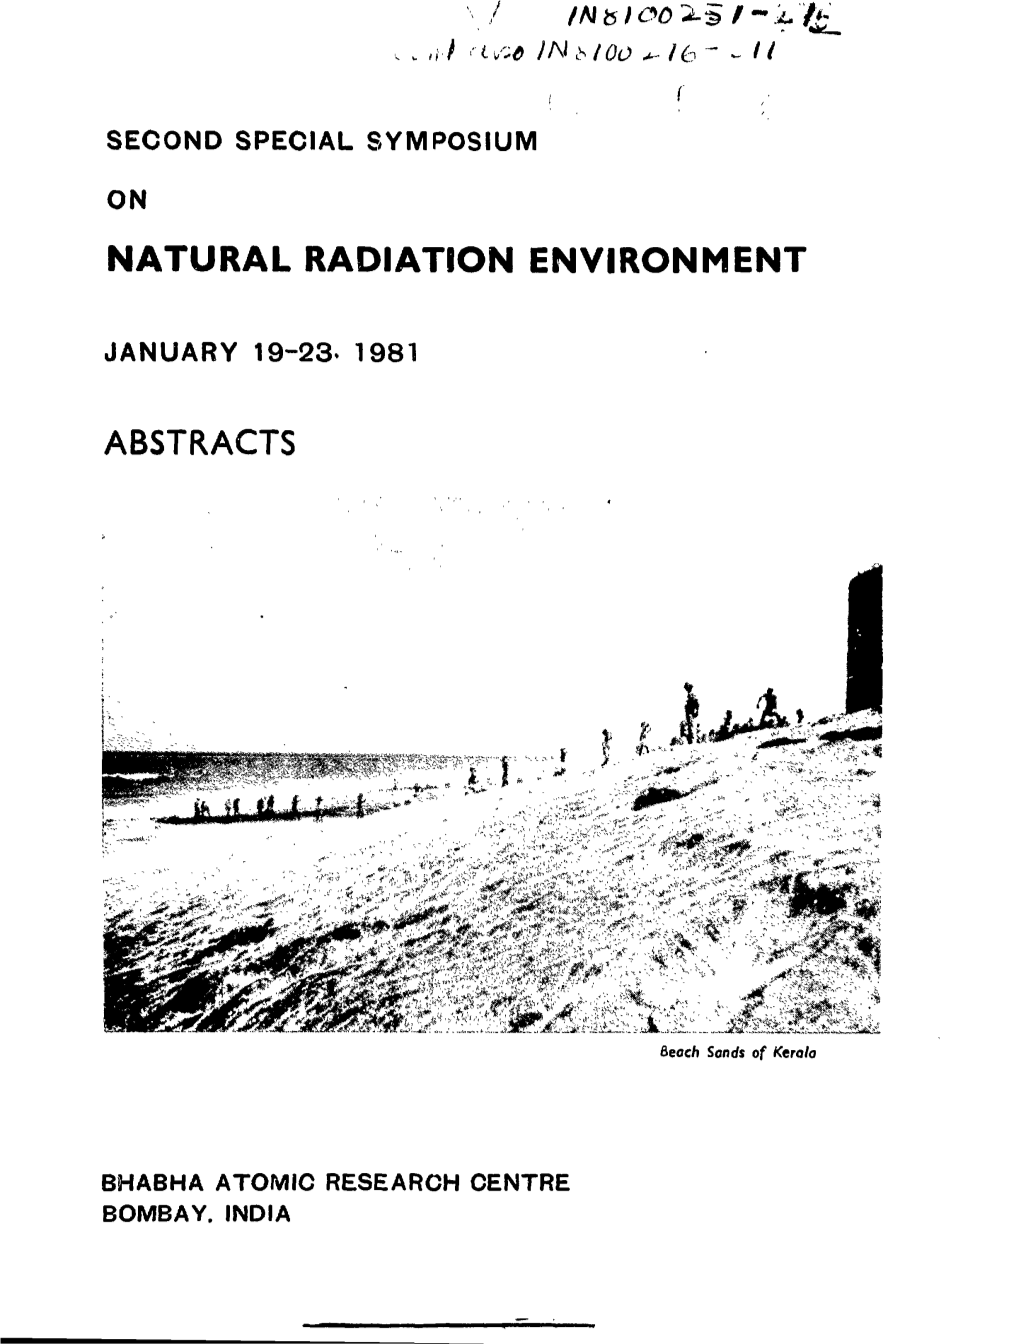 Natural Radiation Environment